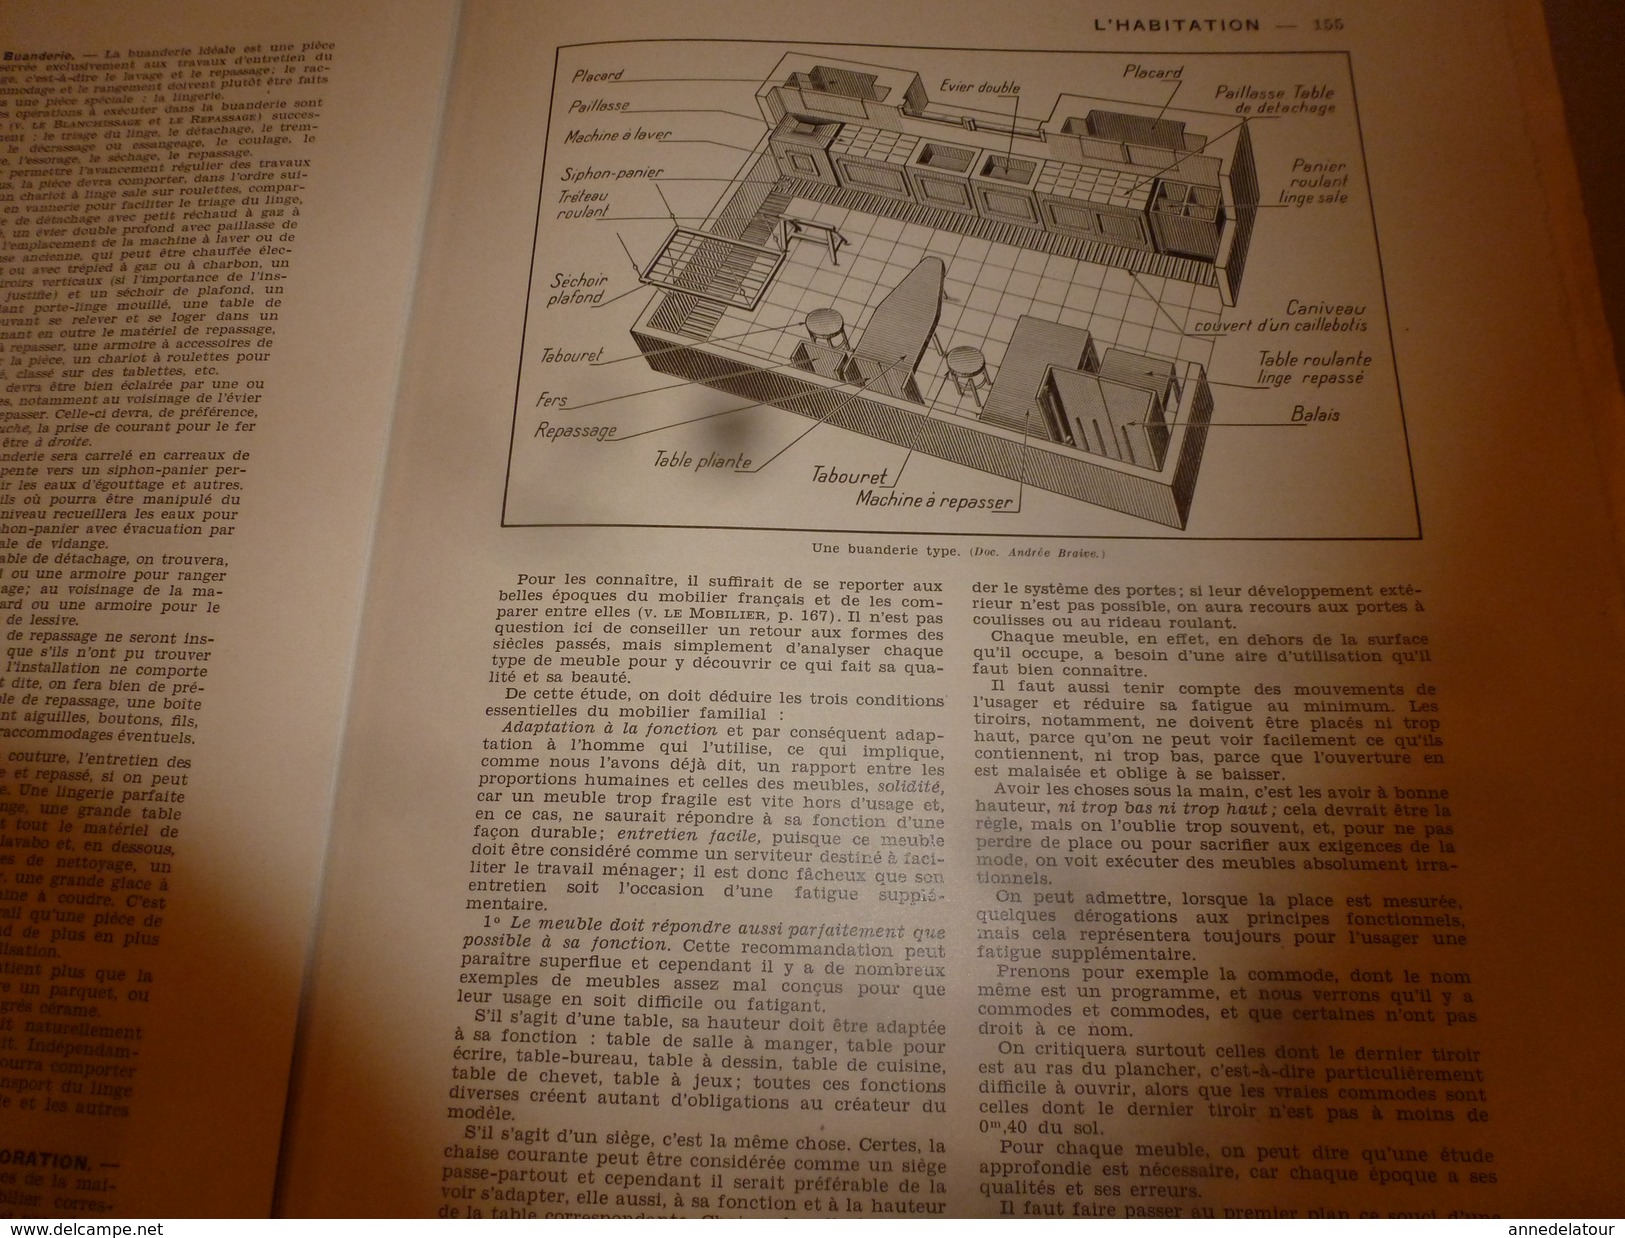 1950 ENCYCLOPEDIE FAMILIALE LAROUSSE ->L'habitation (Très important documentaire ,texte, photos et dessins)